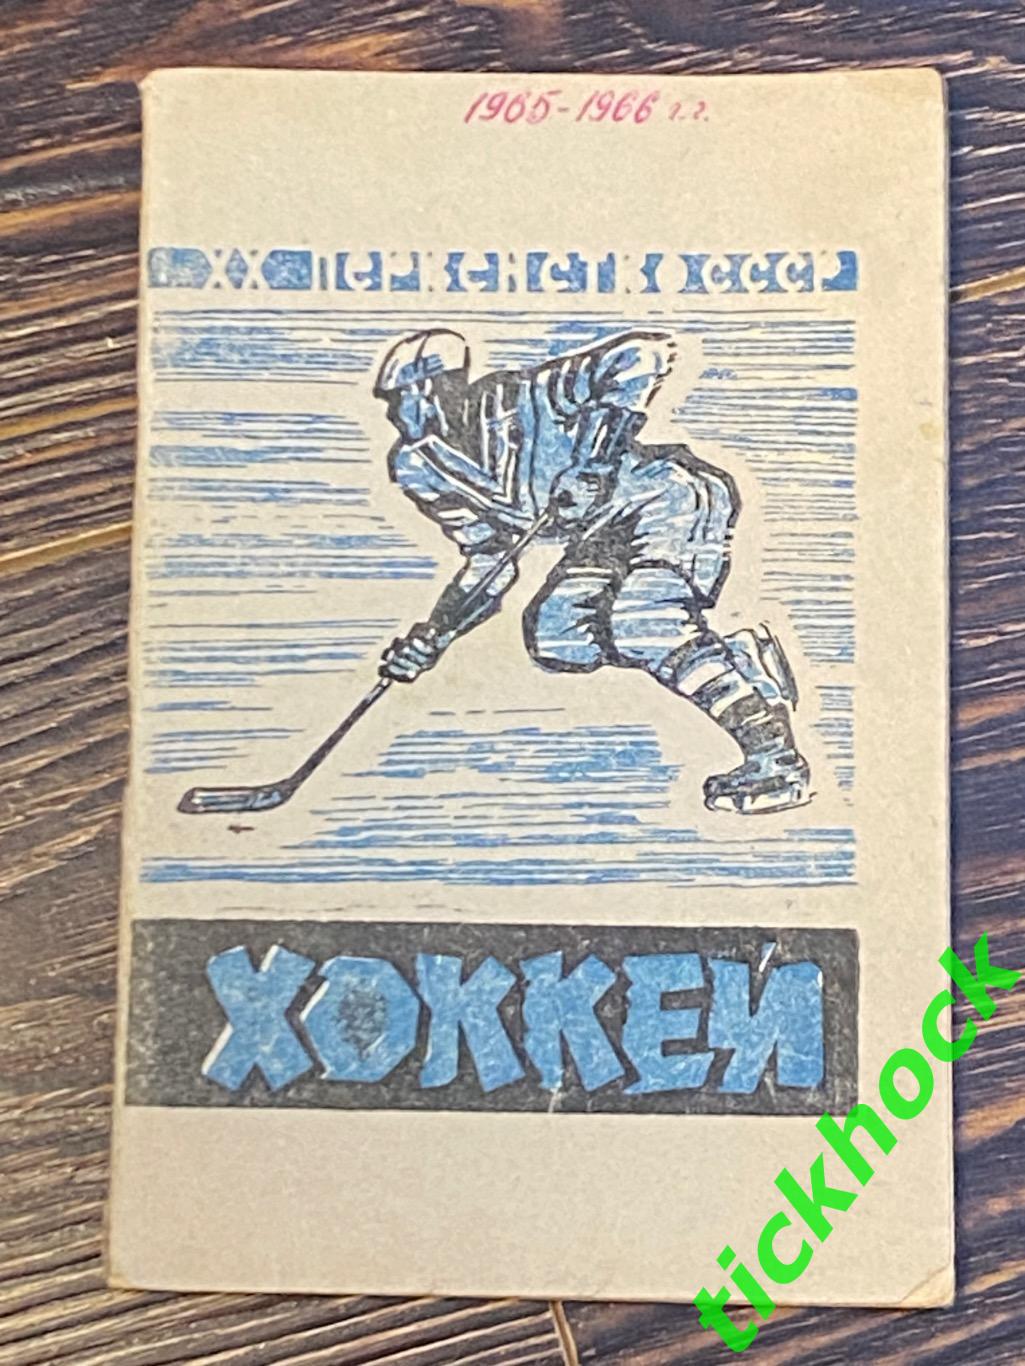 1965 - 1966 Хоккей. К/С Москва, Всероссийская федерация хоккея.